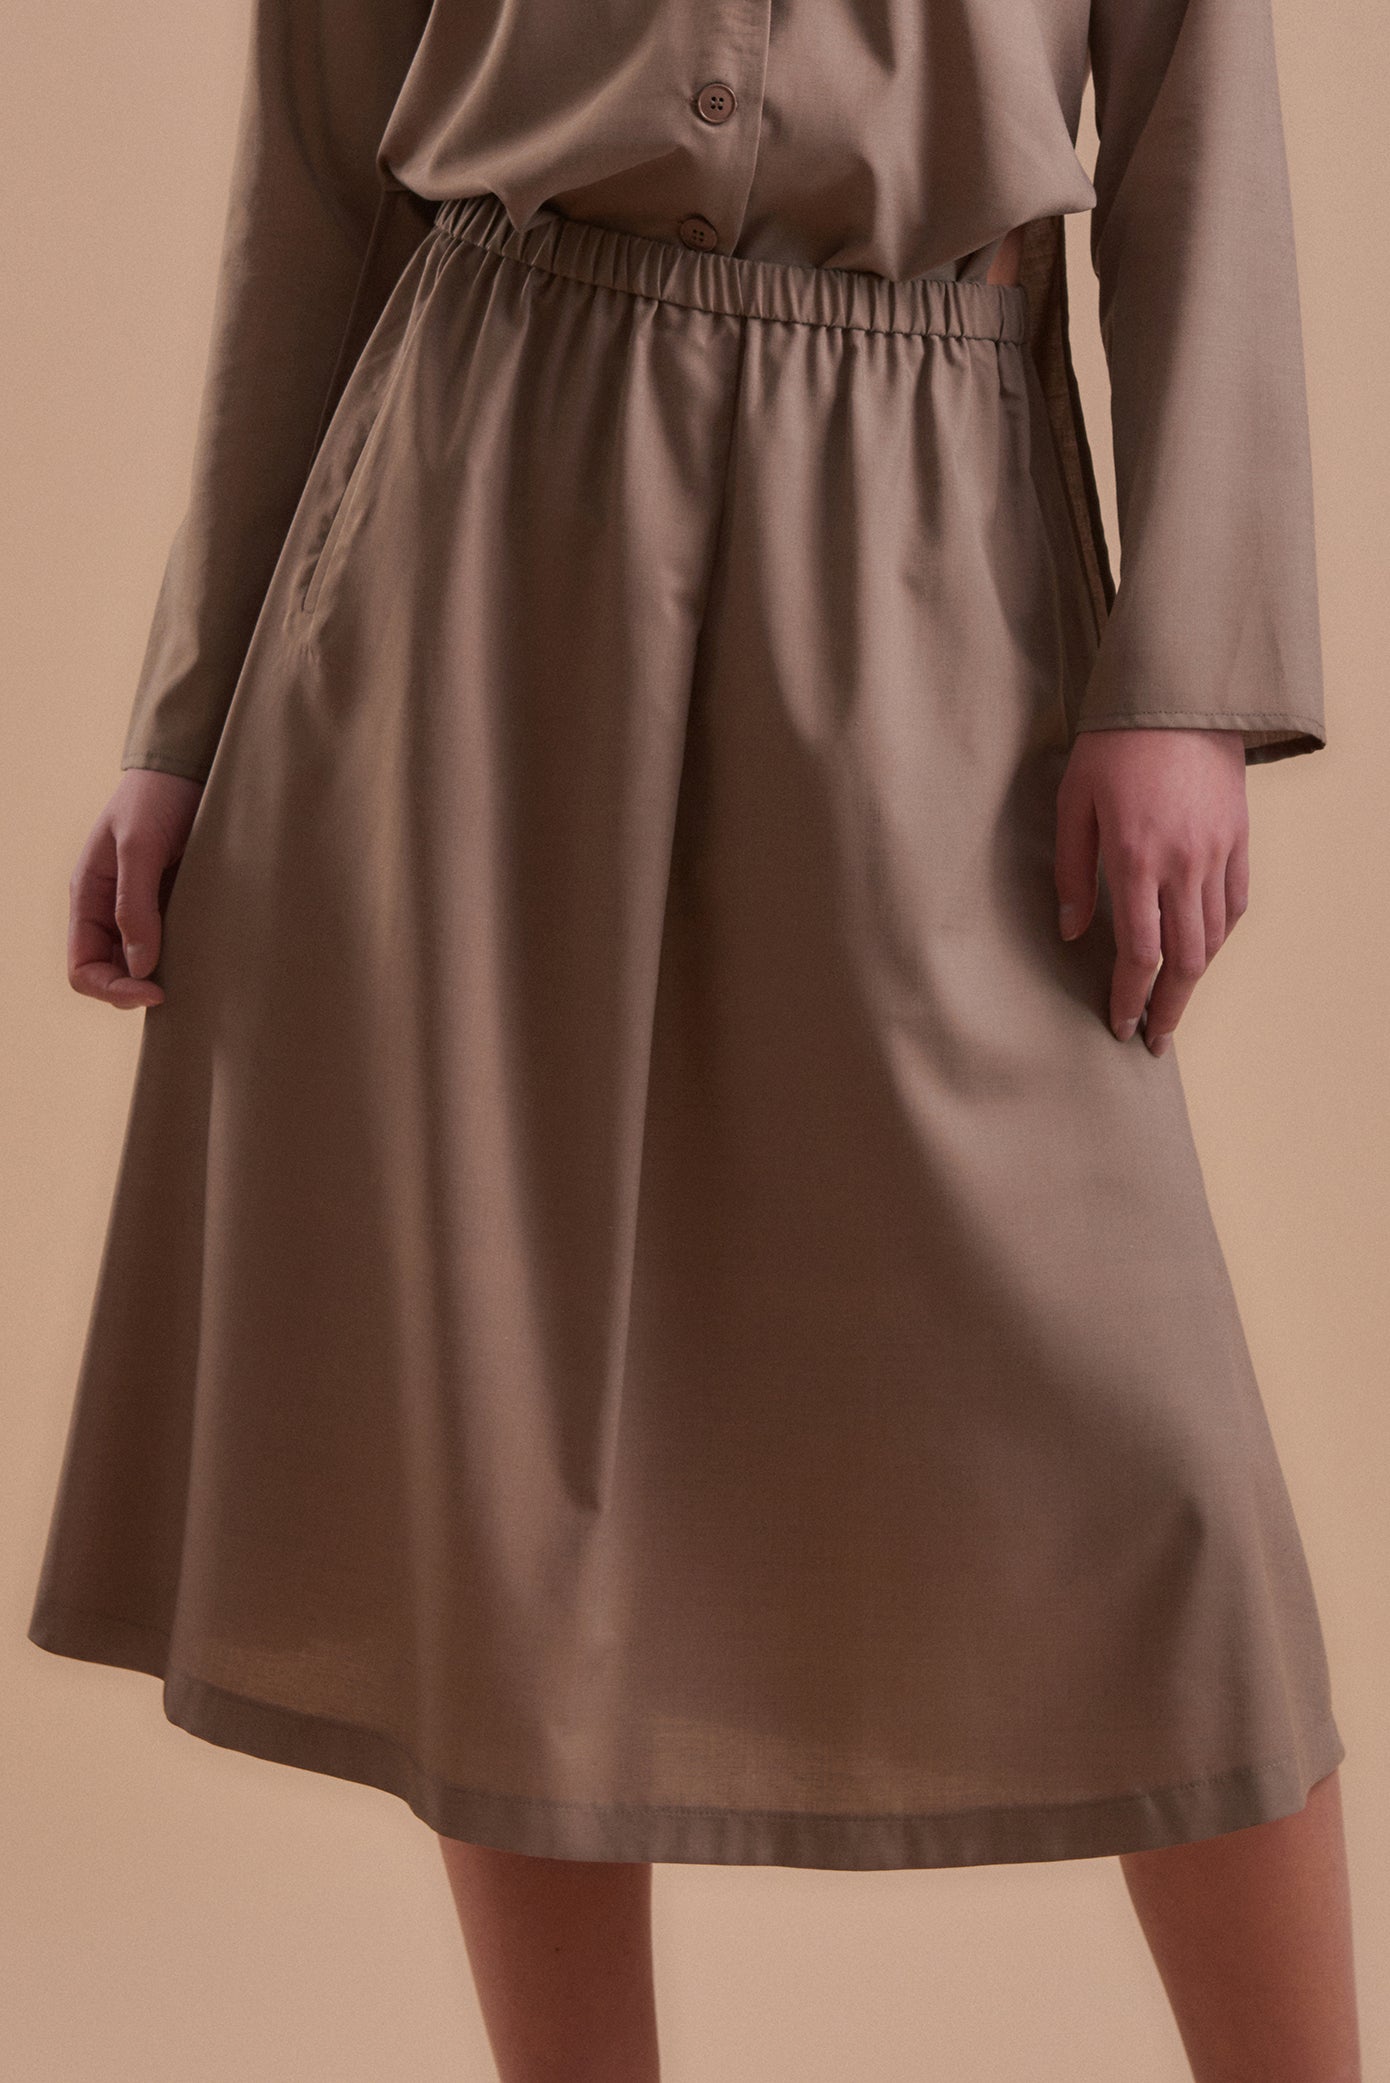 Skirt 1 Medium Length Skirt | Dove Grey